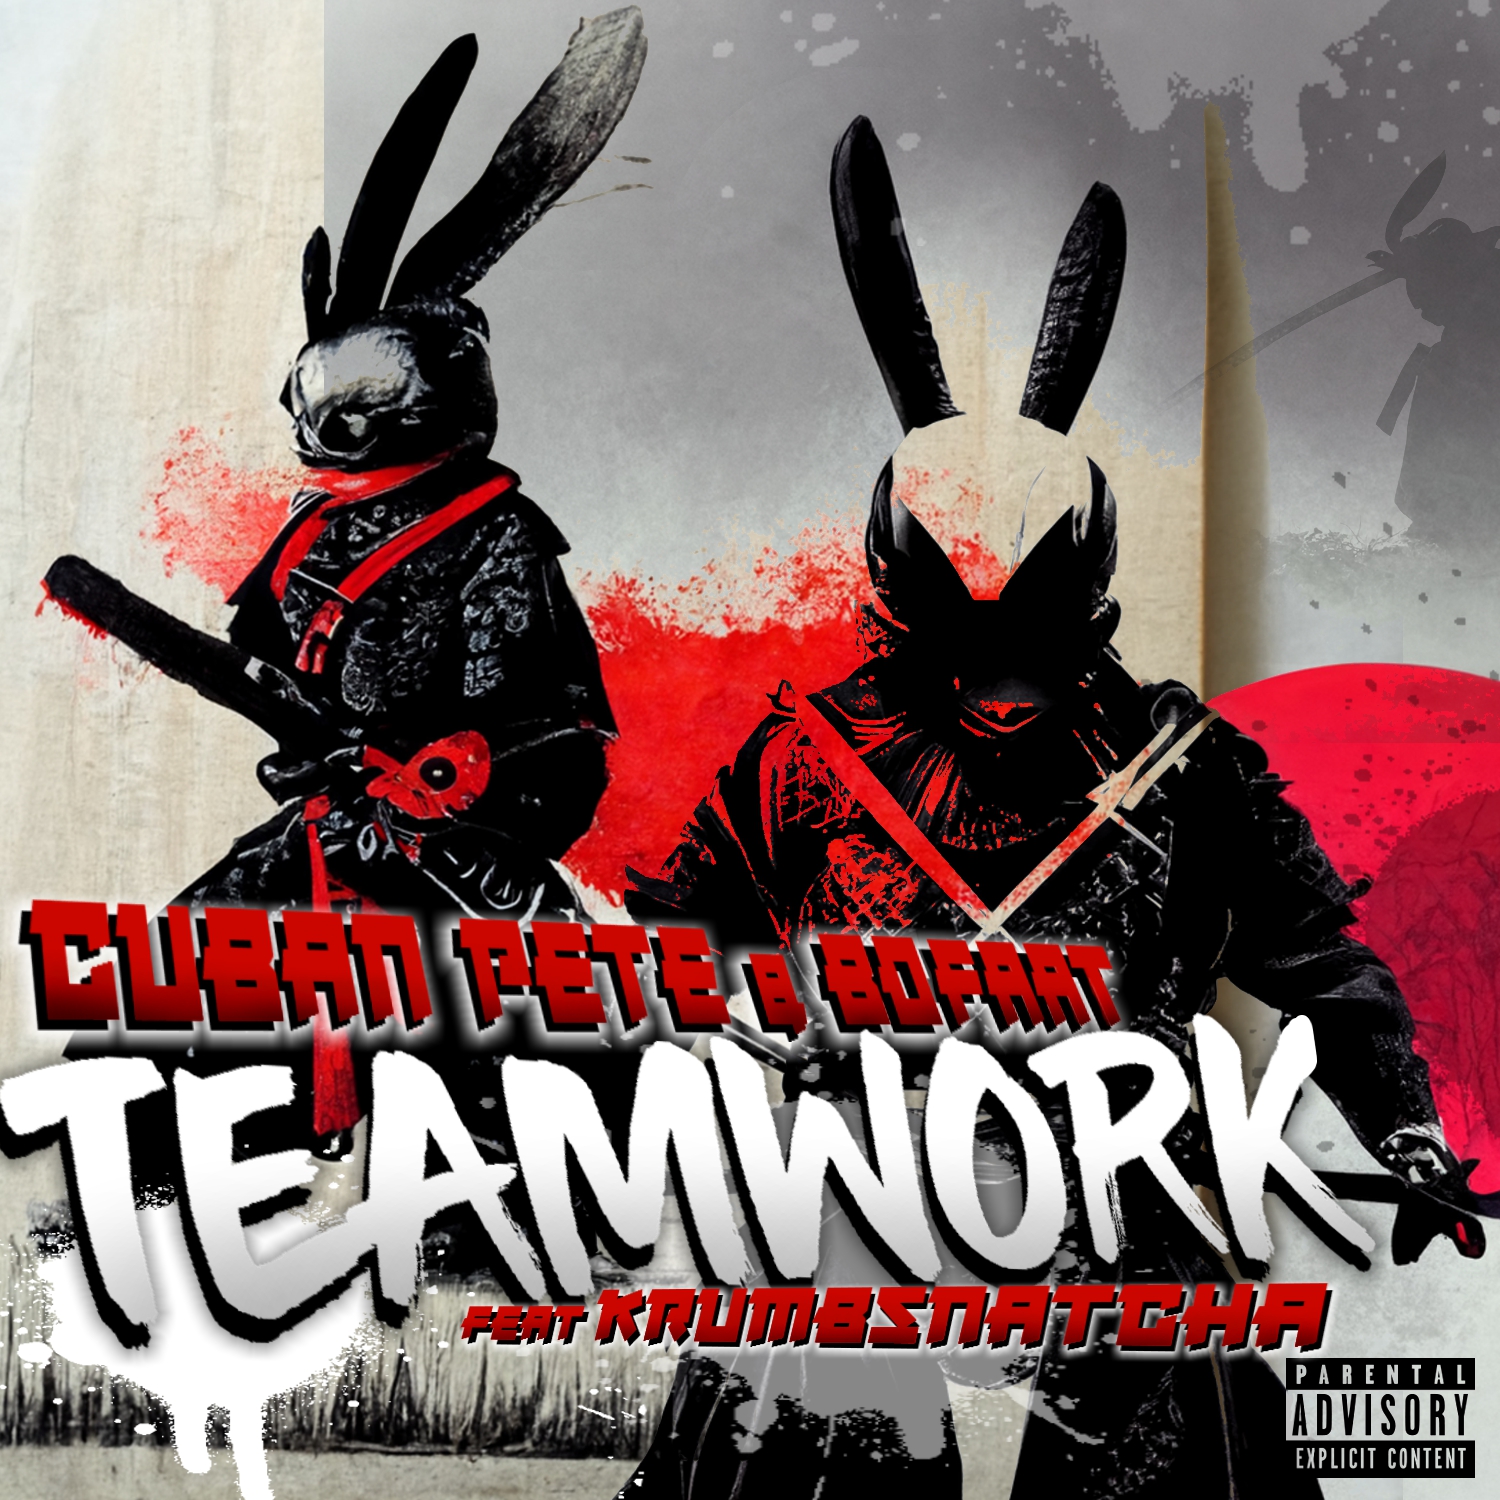 Cuban Pete & BoFaat feat. Krumbsnatcha "Teamwork" (Video)